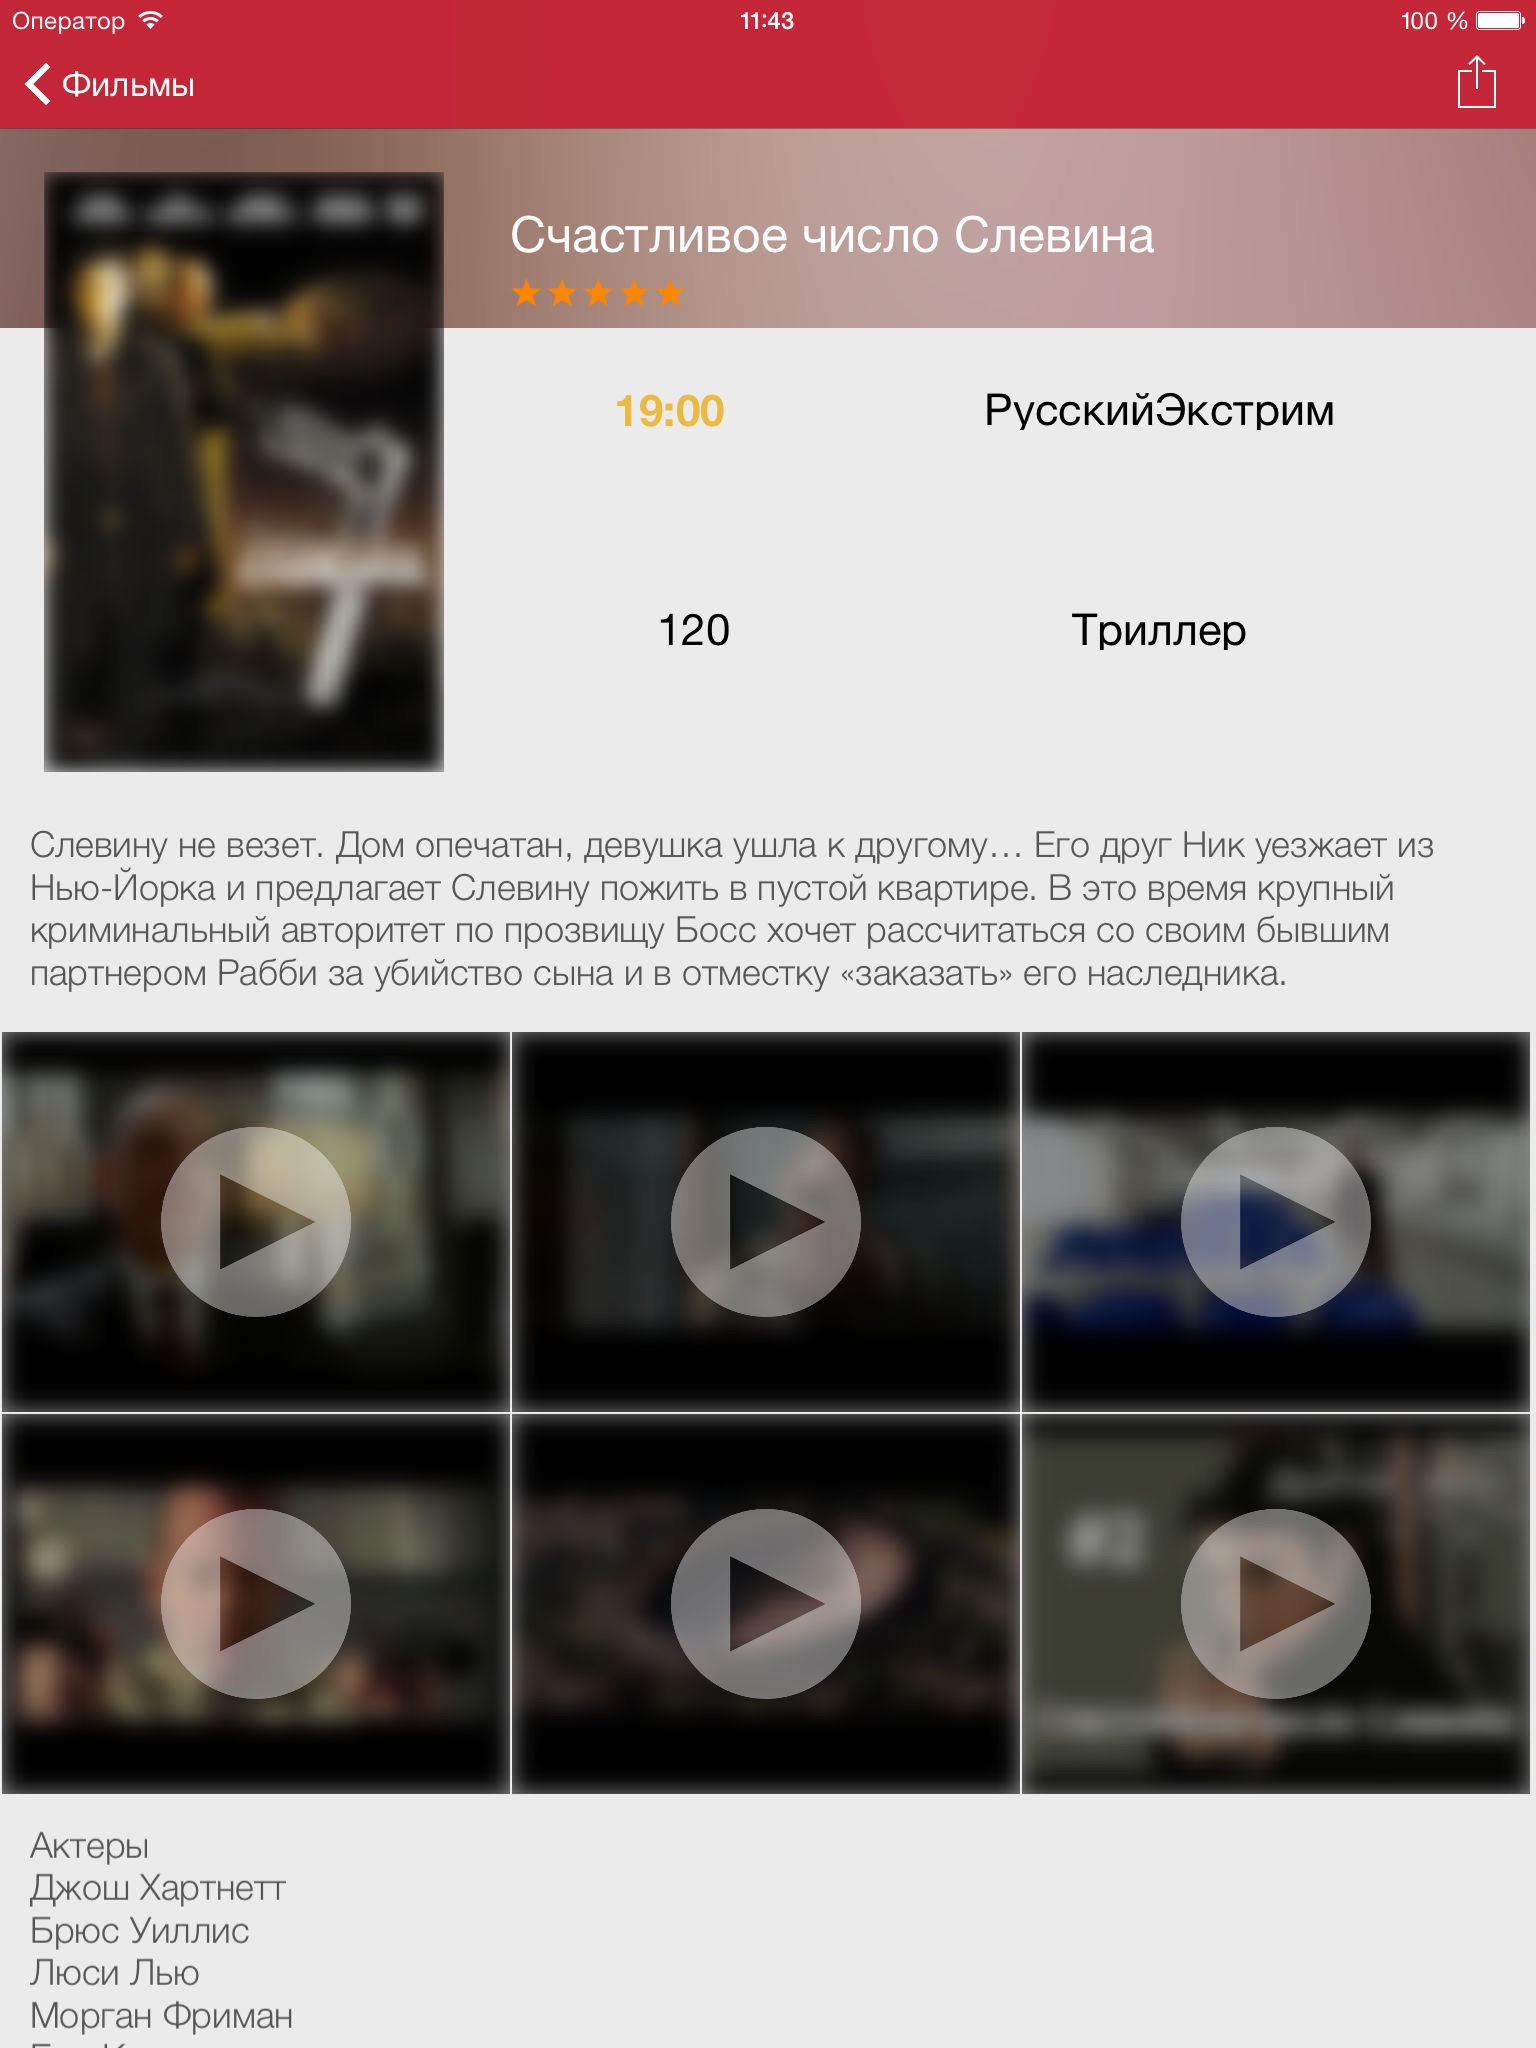 Российское телевидение телегид бесплатно телепередач (iPad издание) RU screenshot 3